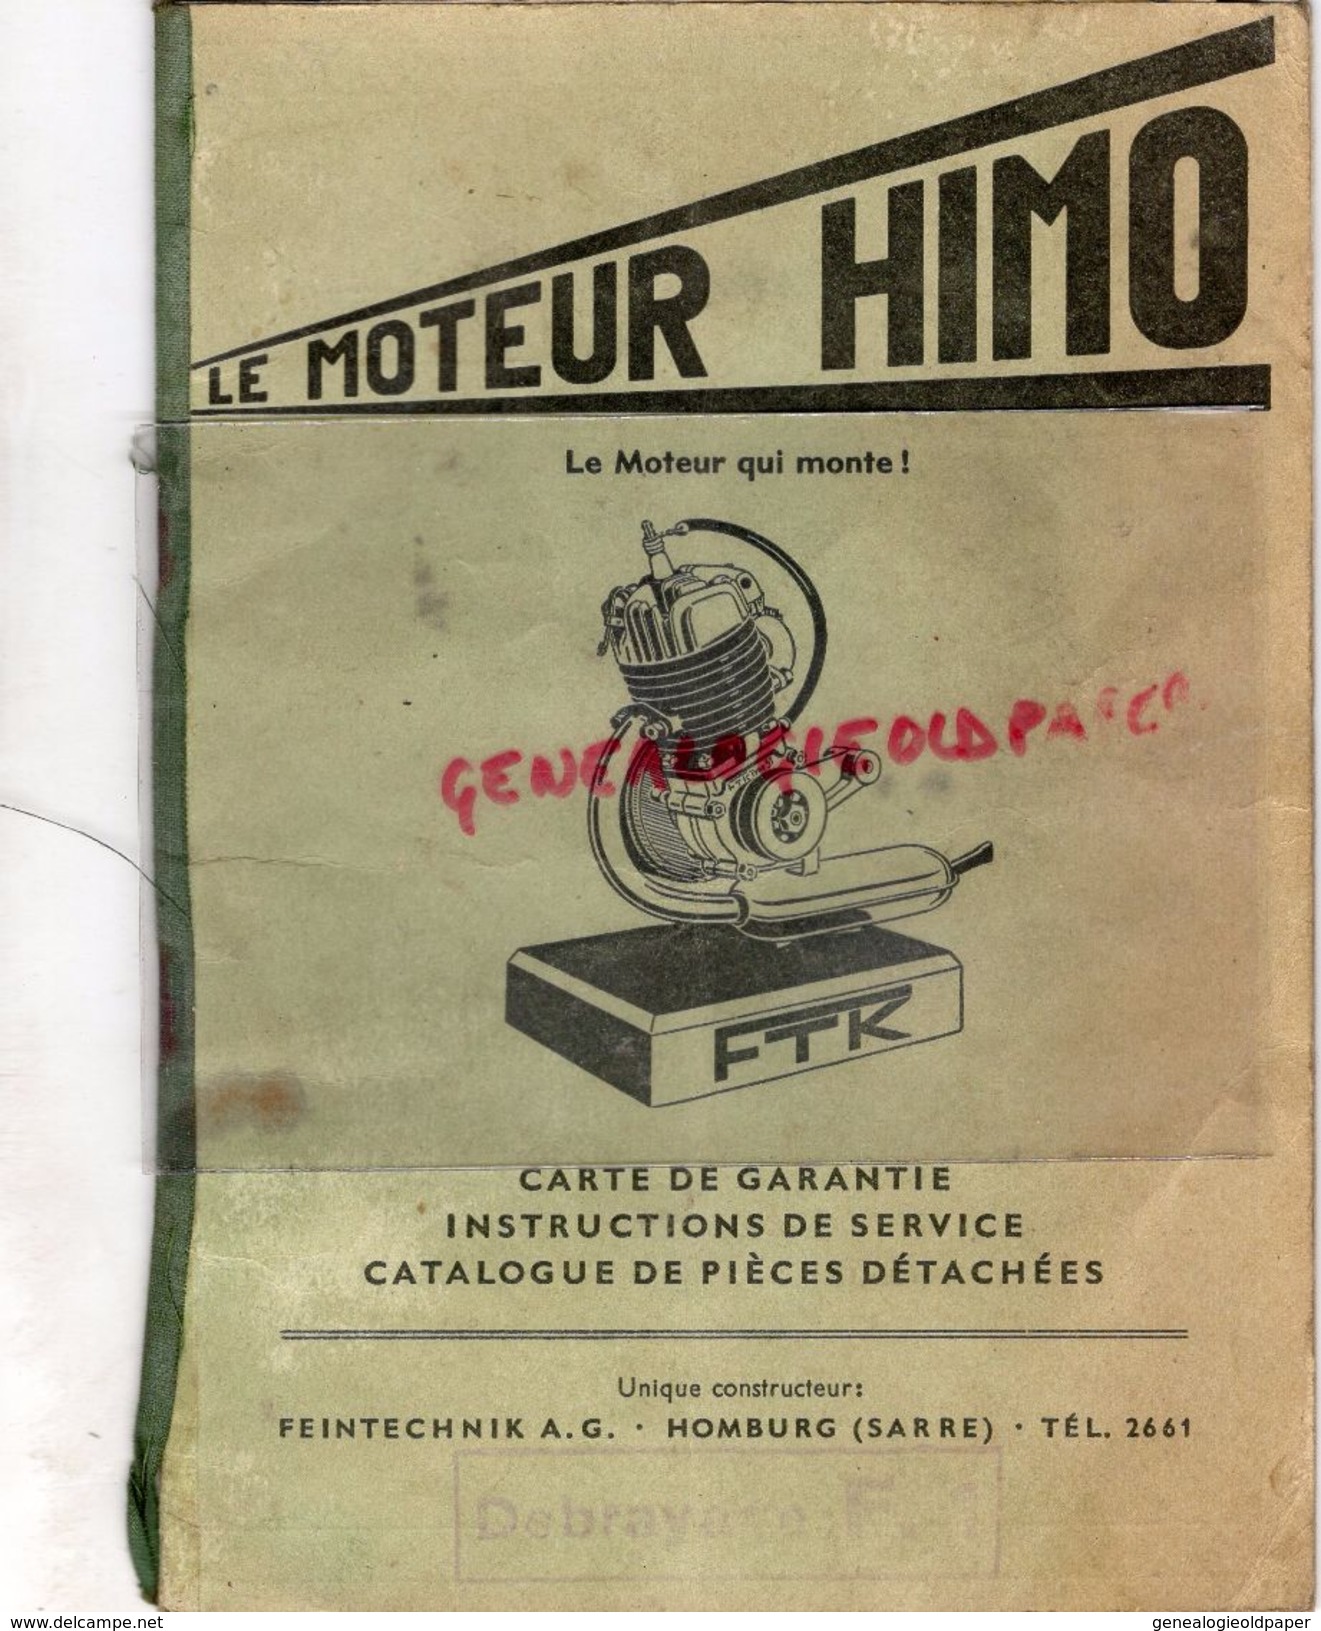 ALLEMAGNE- LE MOTEUR HIMO TYPE 51- FTK- FEINTECHNIK A.G. HOMBURG-SARRE- 1953- - Automobilismo